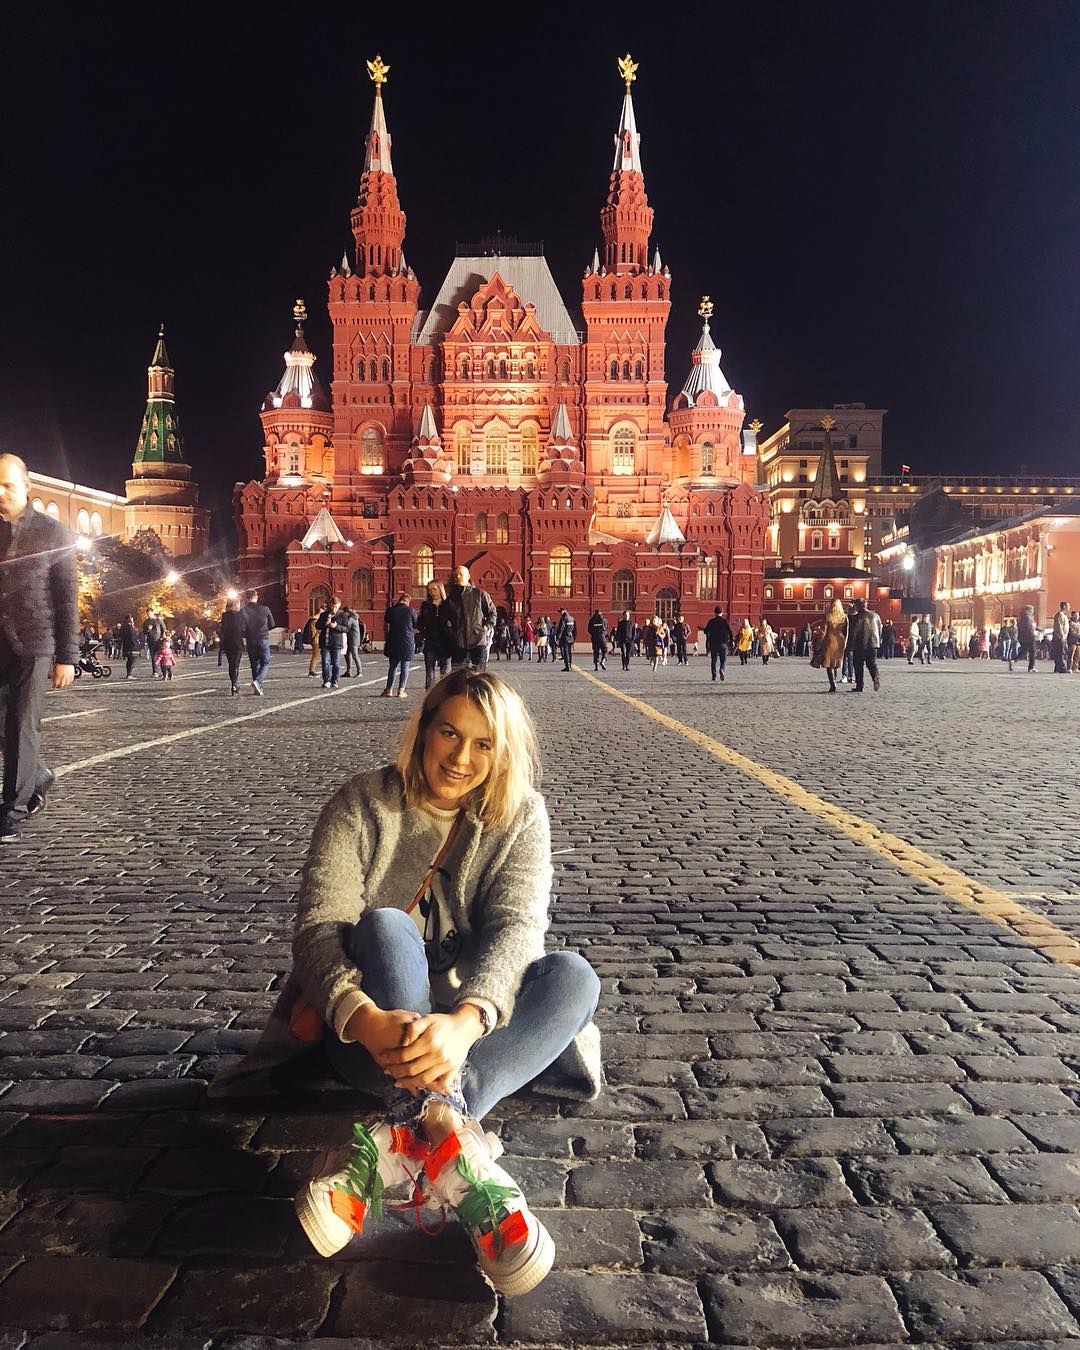 Анастасия Павлюченкова поделилась новым снимком в Instagram